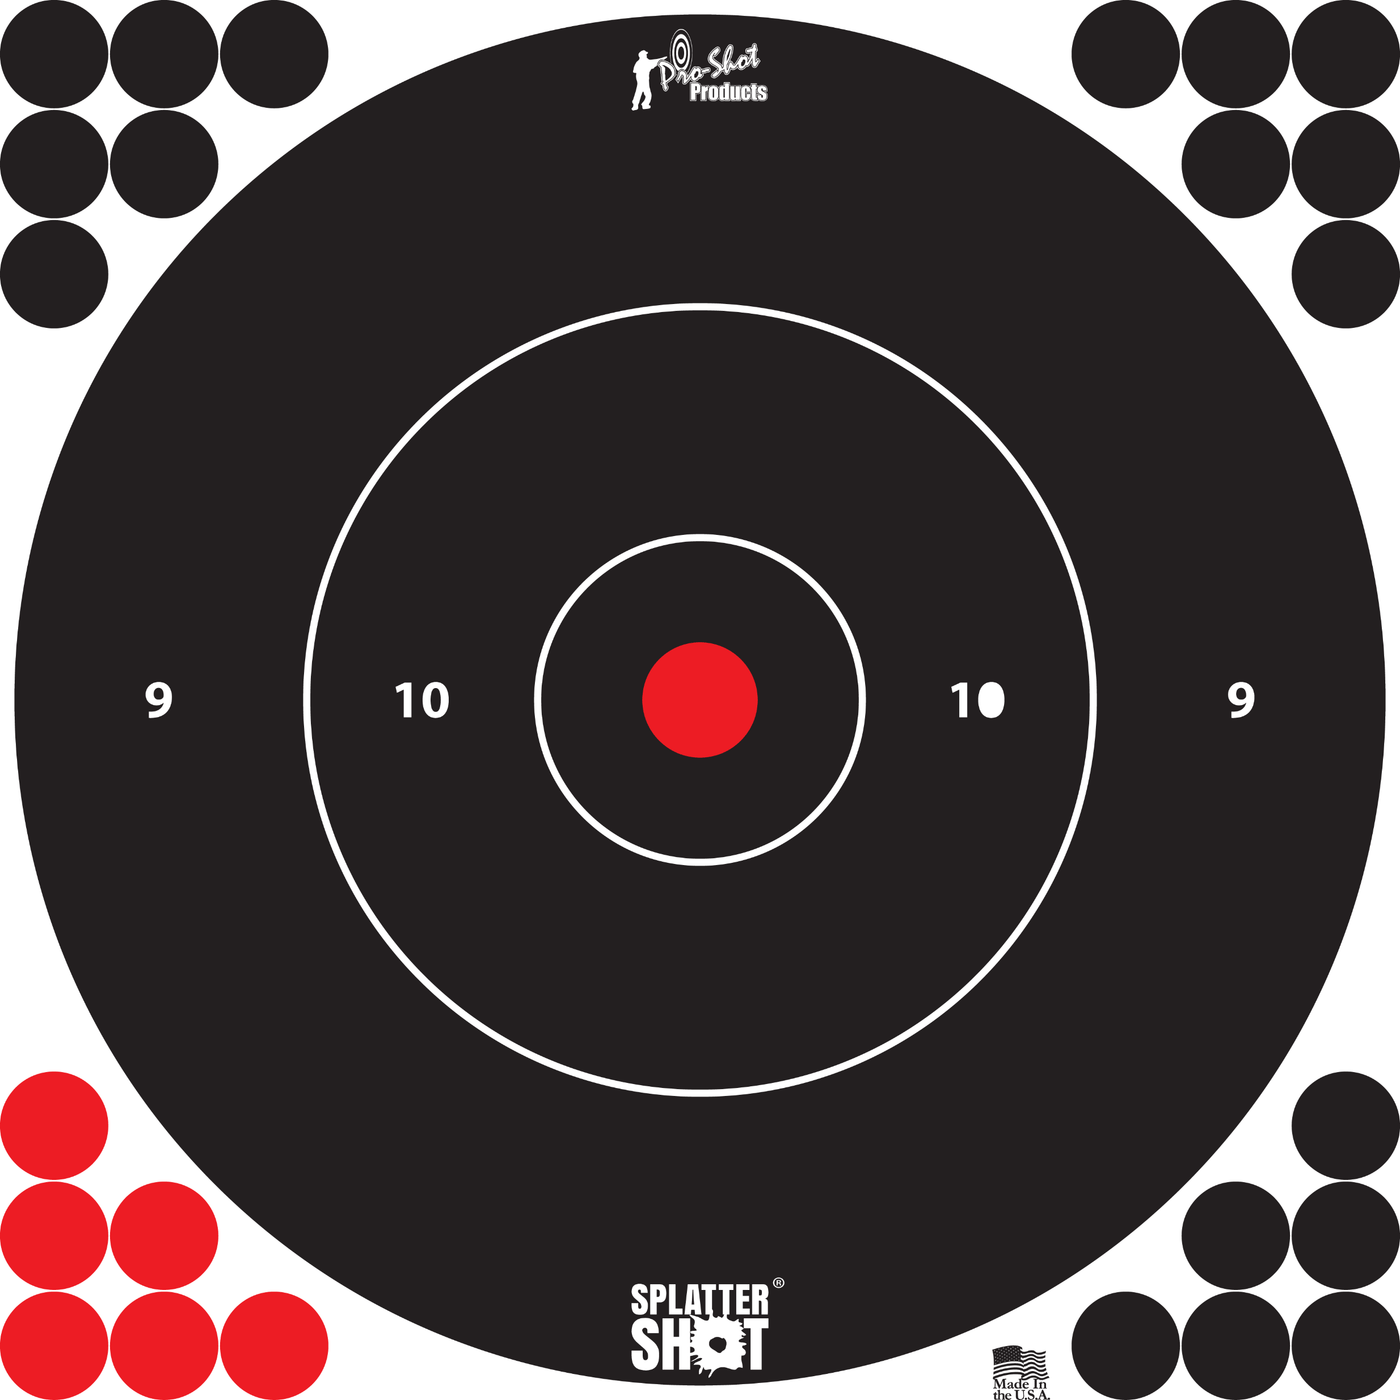 Pro-Shot Pro-shot Splattershot, Proshot 12b-whte-5pk     12" Splatter Bullseye Trg Shooting